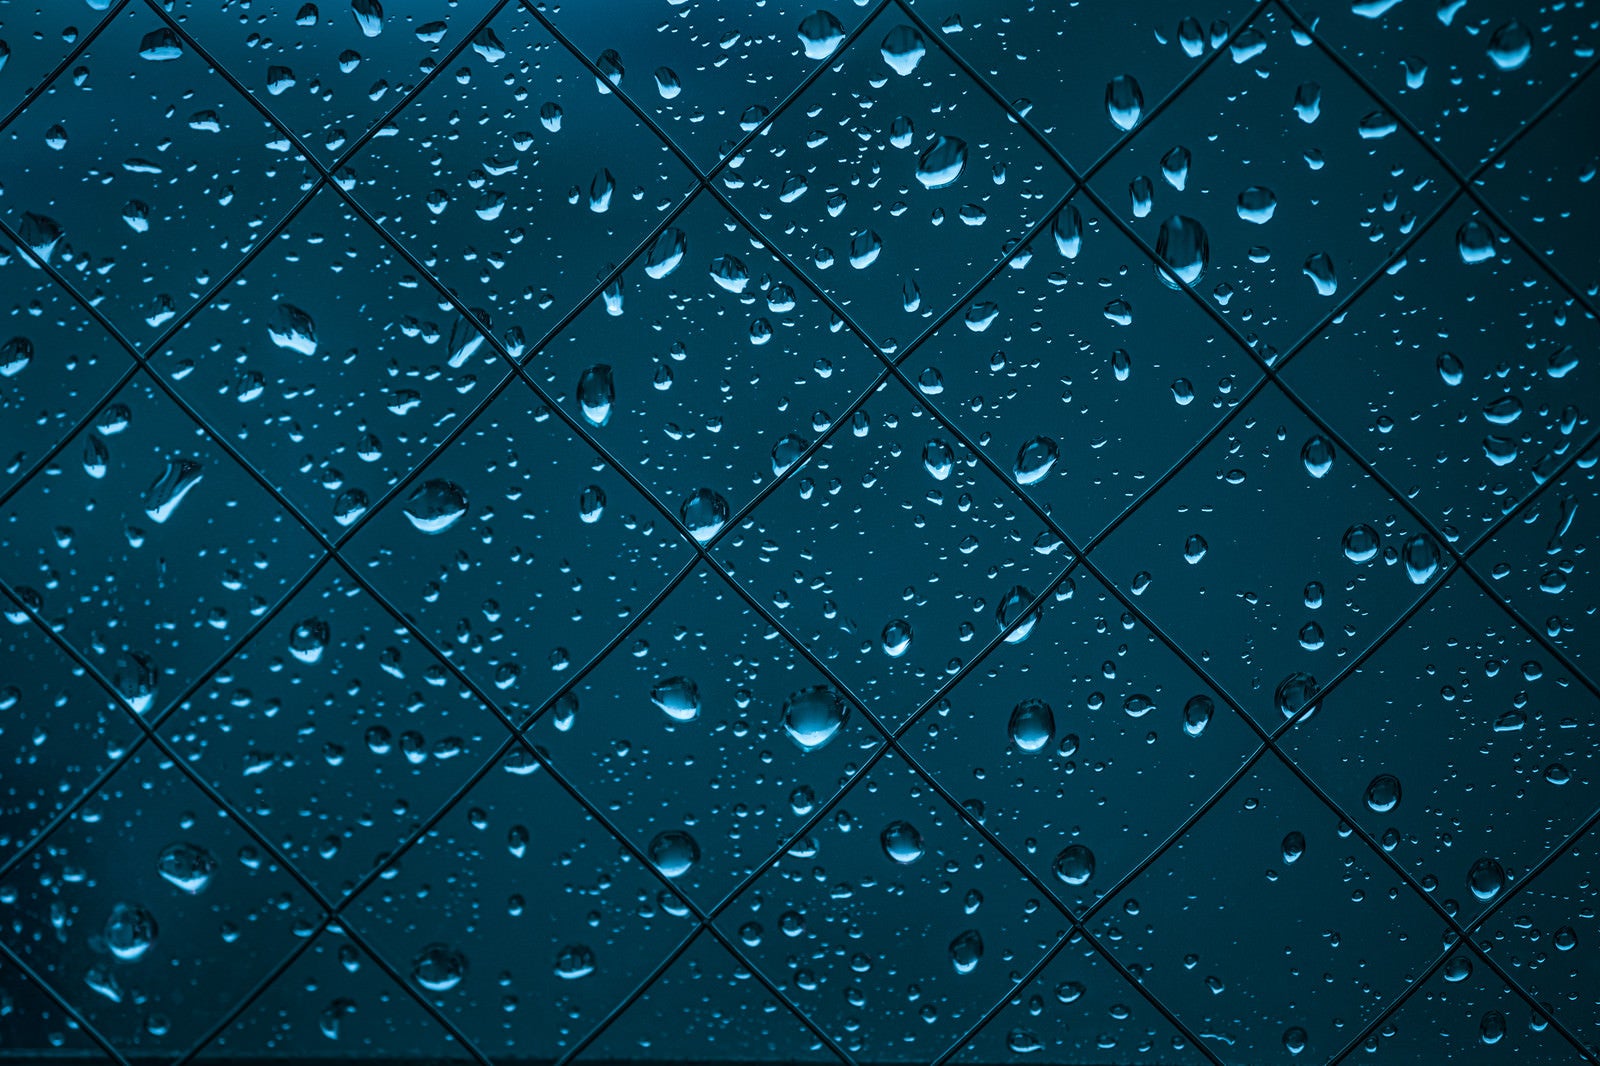 「雨が降った窓の水滴」の写真